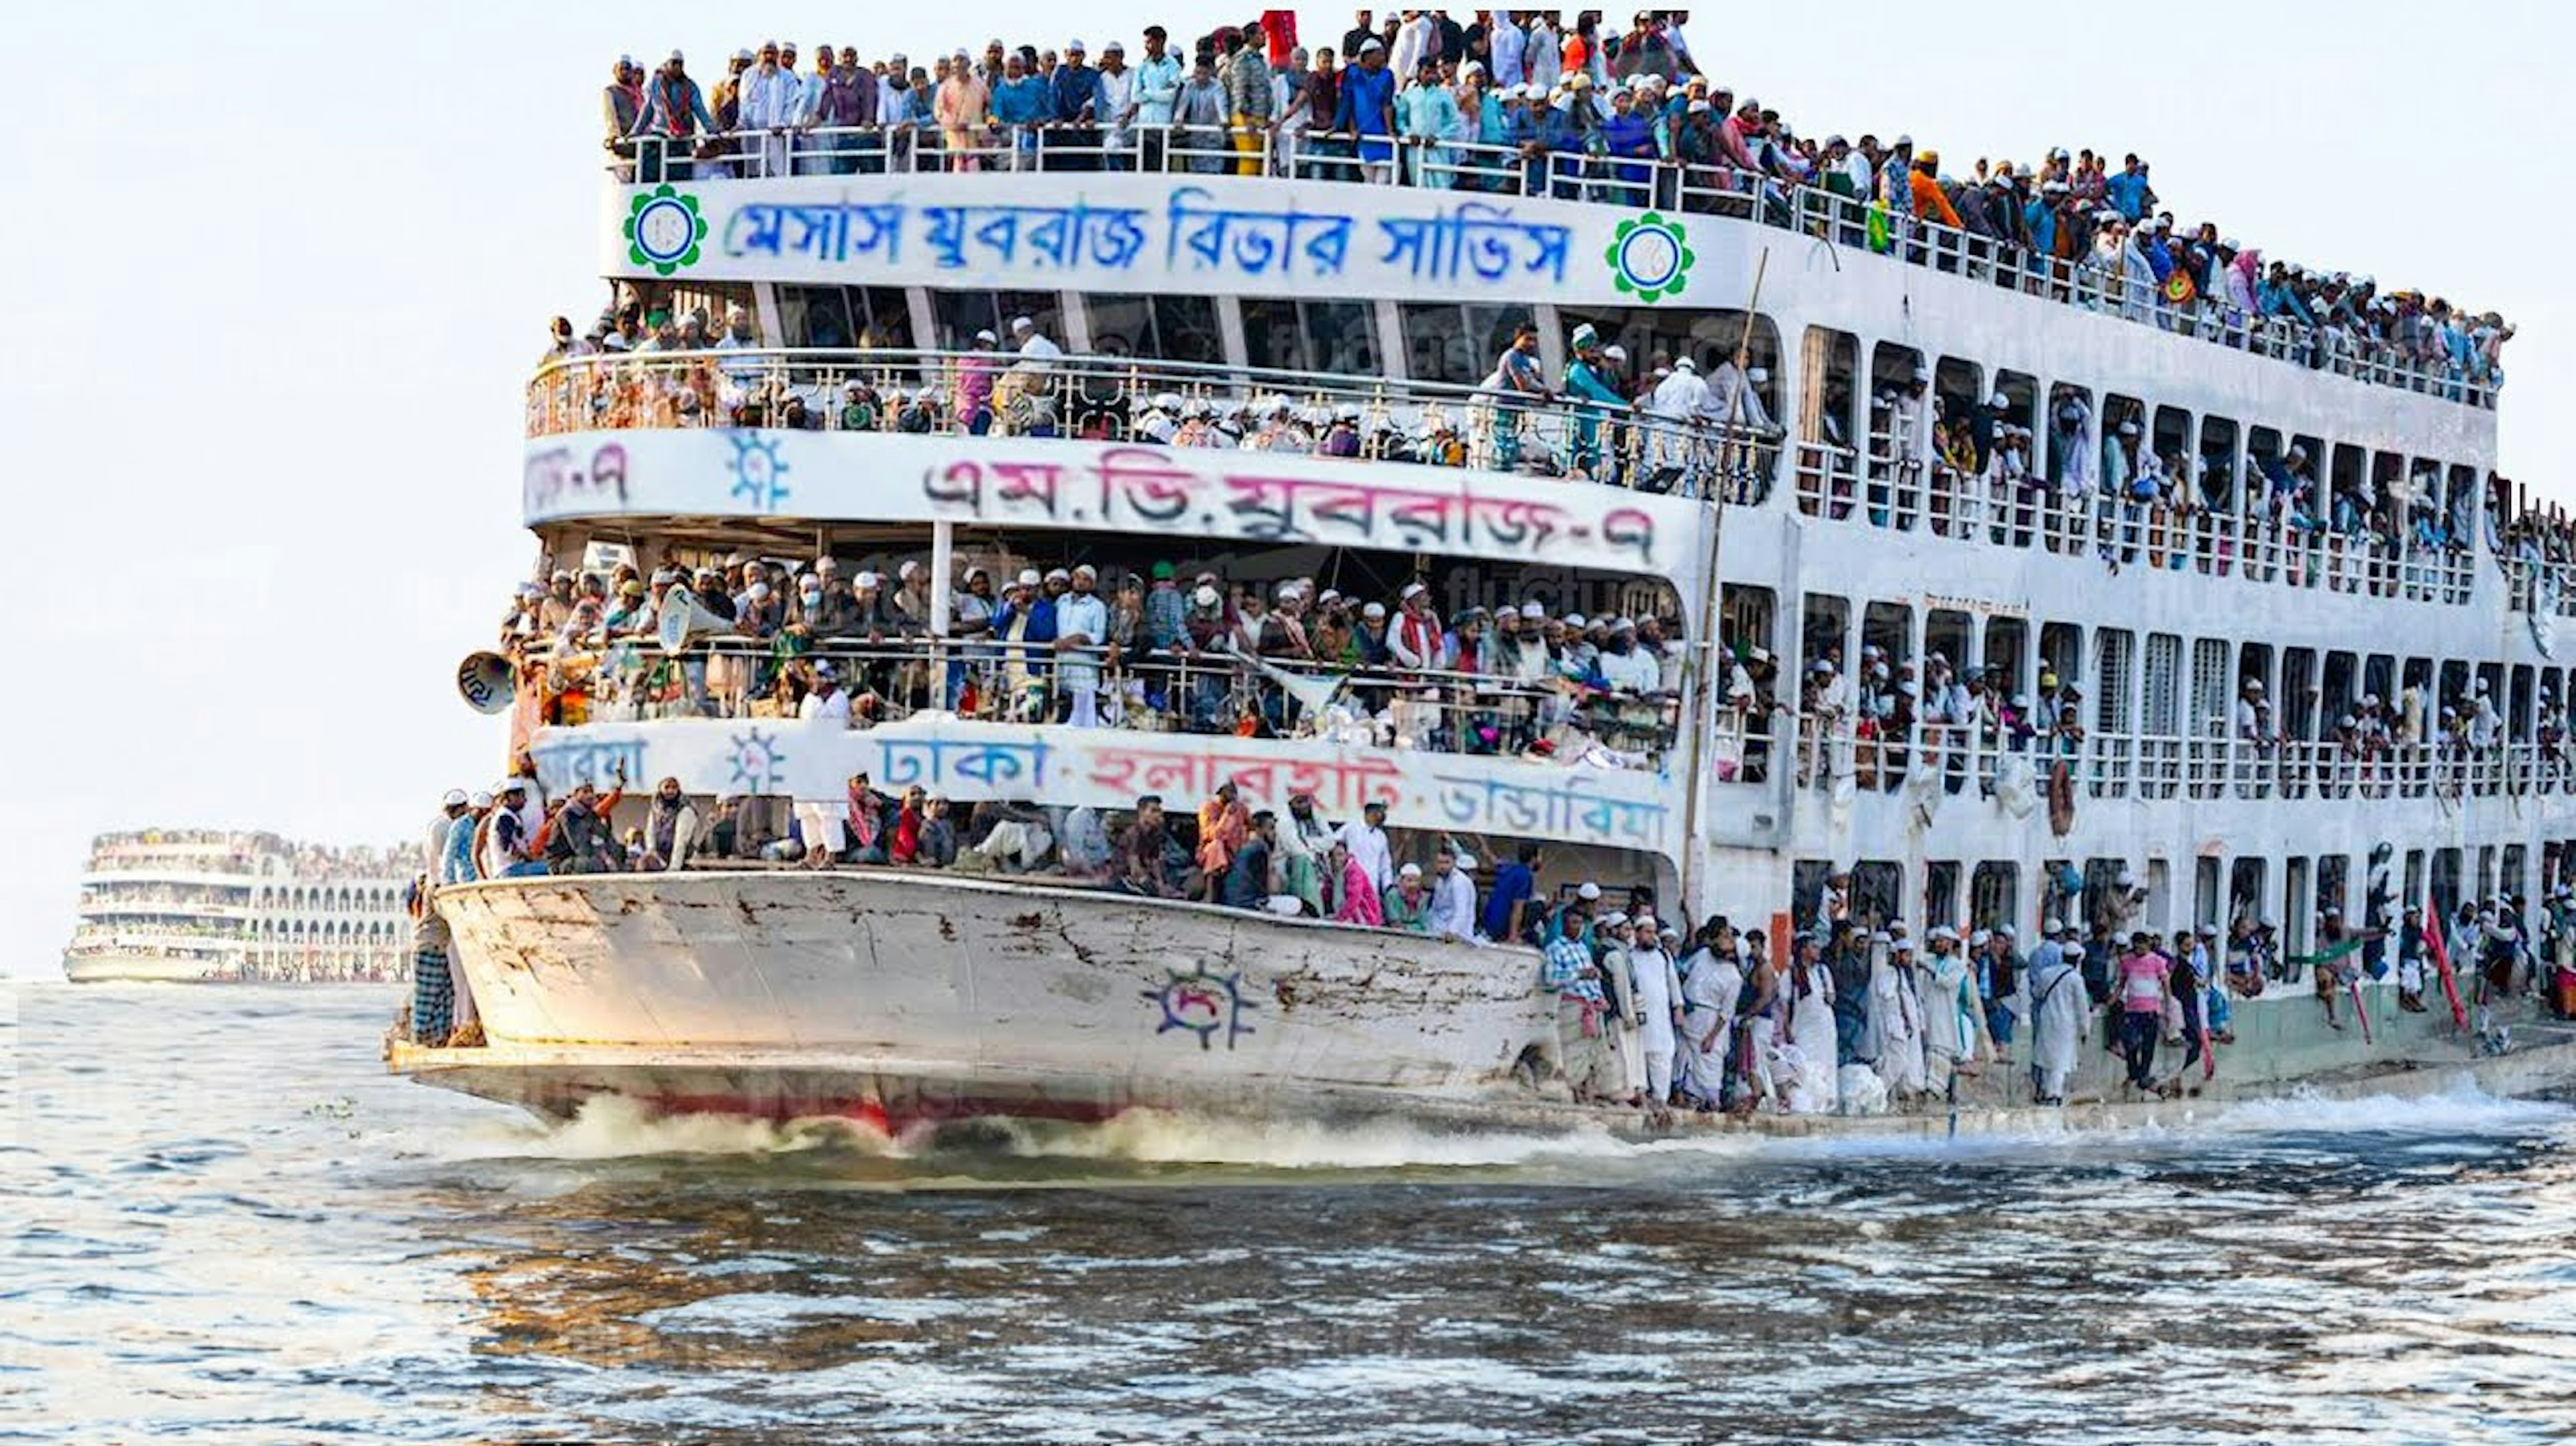 Överlastad färja som trafikerar Burigangafloden i Bangladesh.